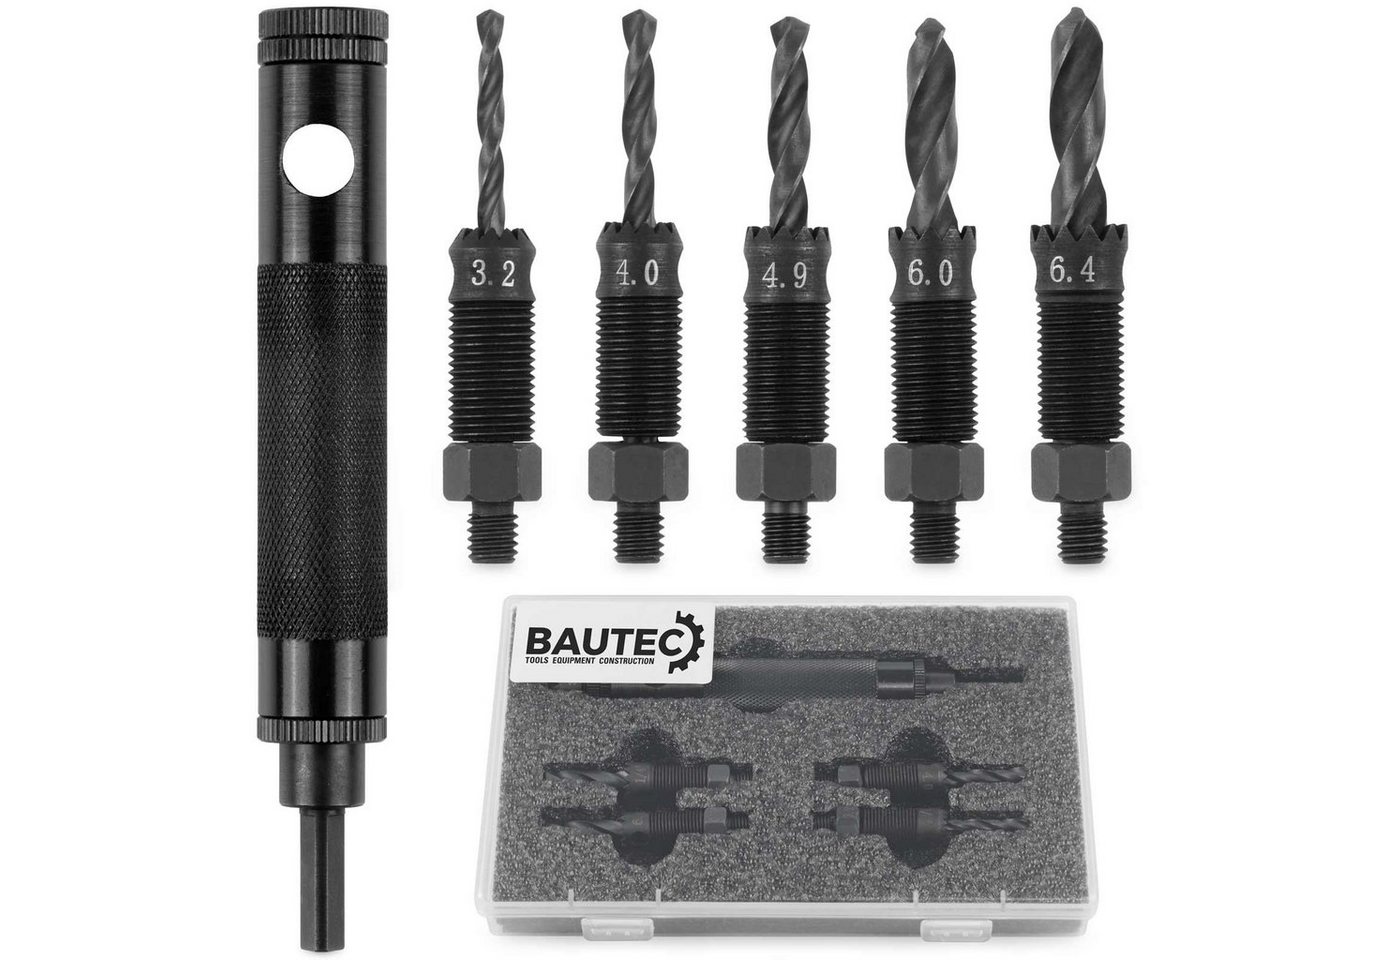 BAUTEC Blindnietzange Werkzeug zum Entfernen von Blindnieten » für Blindnieten Ø 3,2-6,4 mm, Packung 15-tlg. von BAUTEC